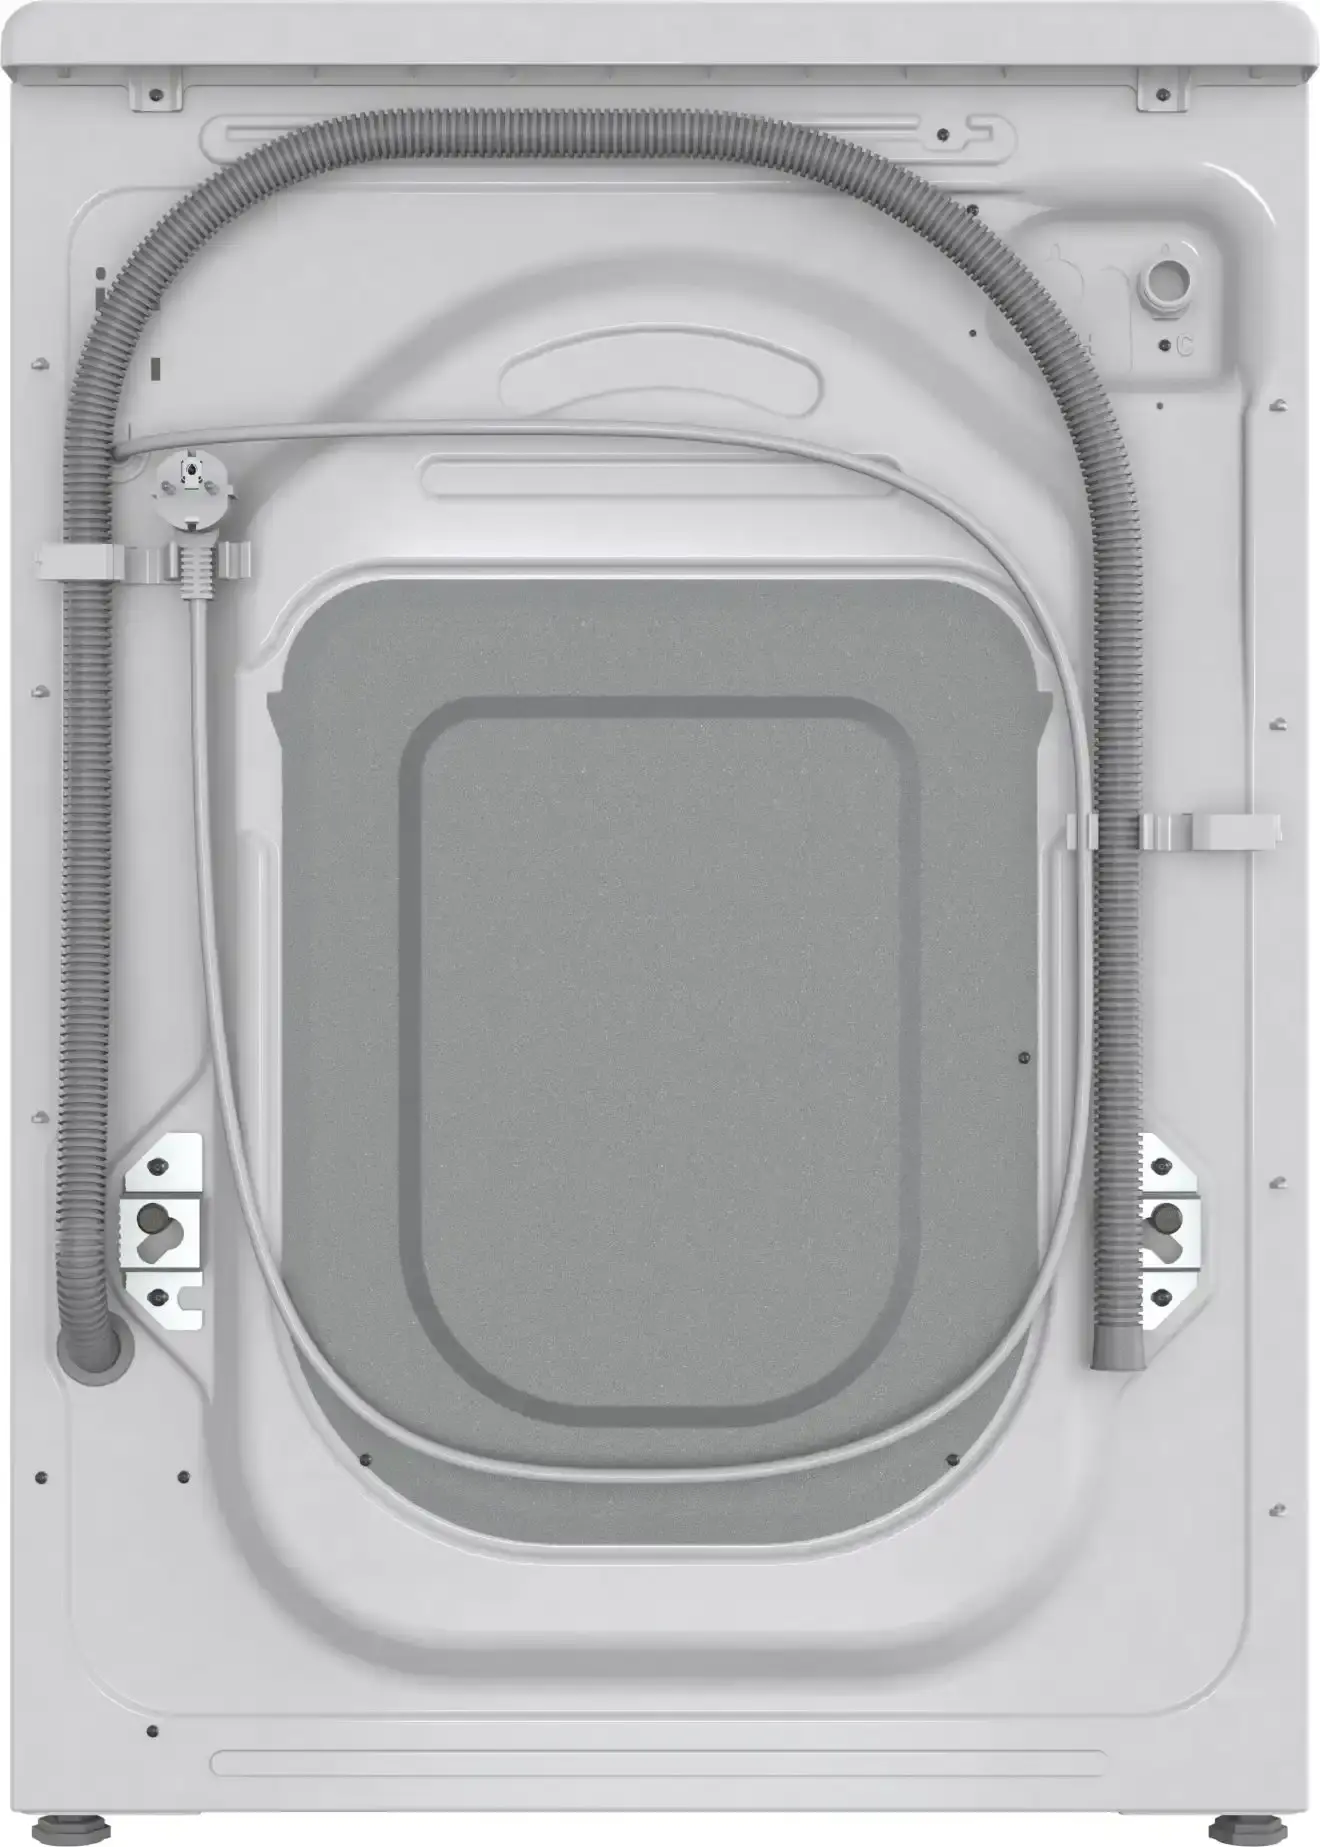 Selected image for GORENJE W2PNA 14 APWIFI Mašina za pranje veša, 10 kg, 1400 obrt/min, Bela